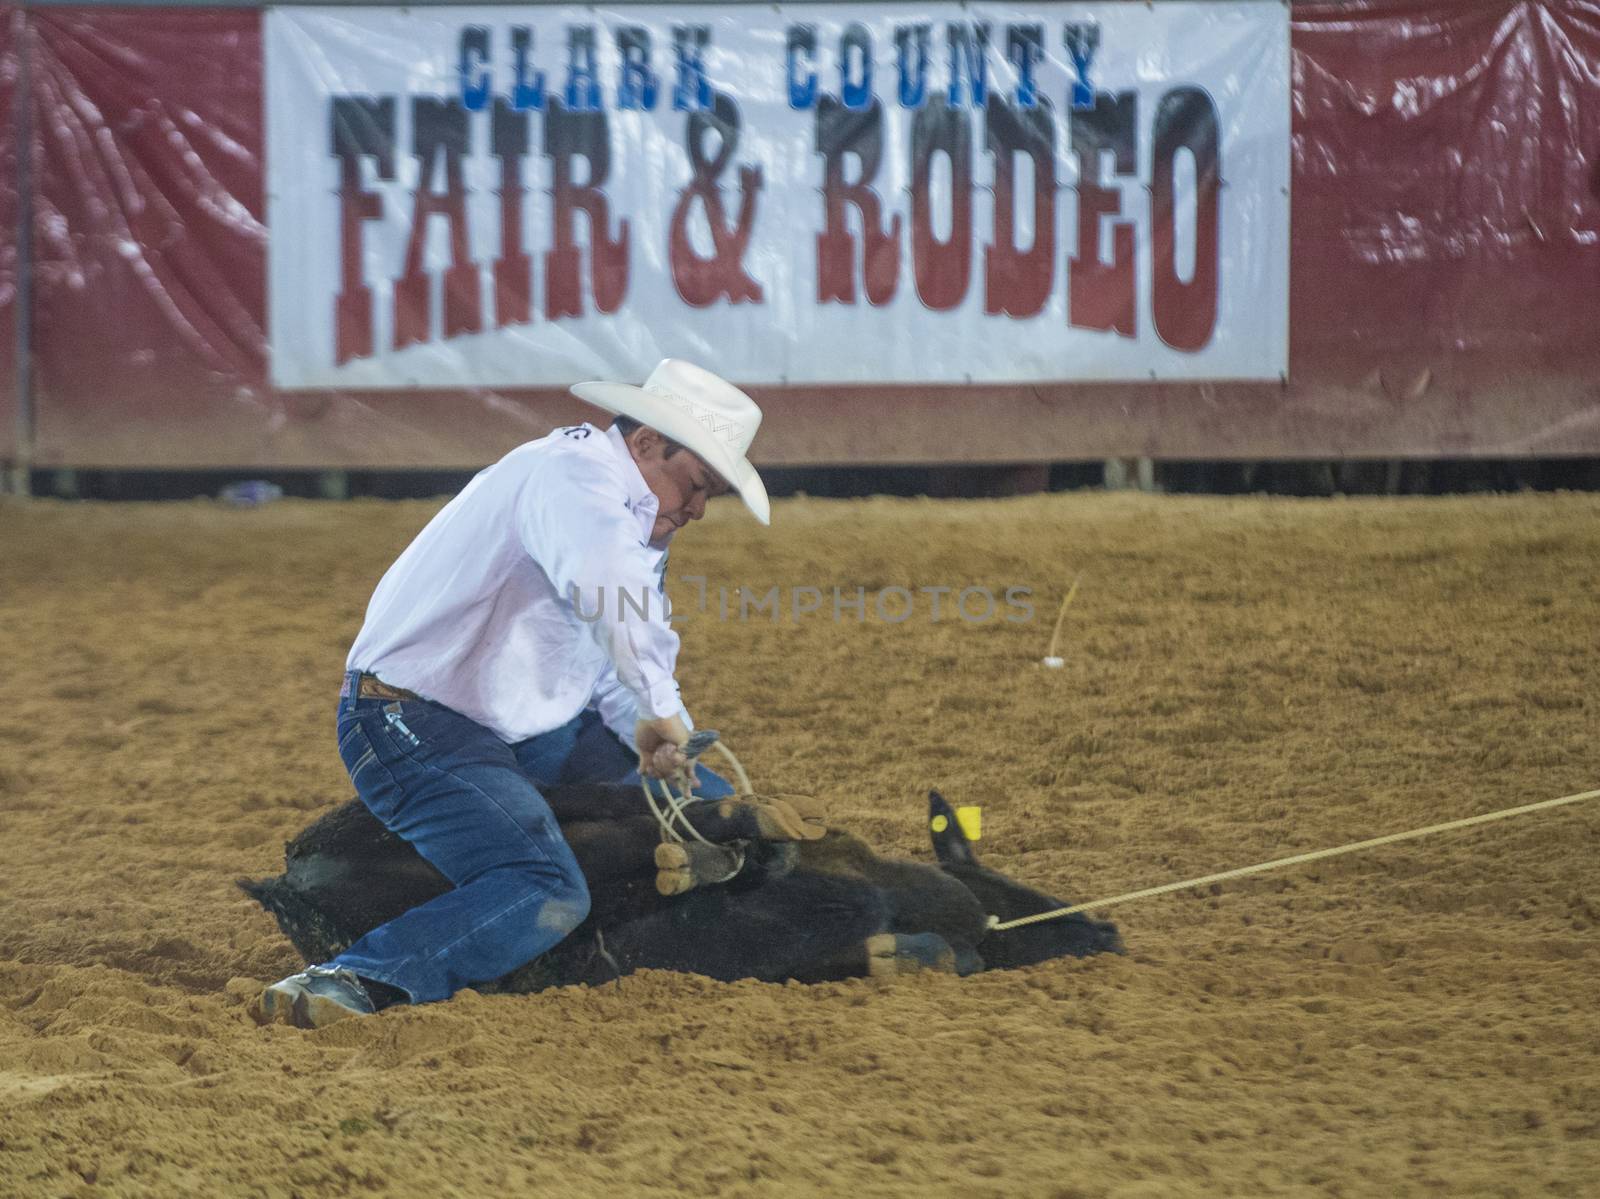 Clark County Fair and Rodeo by kobby_dagan